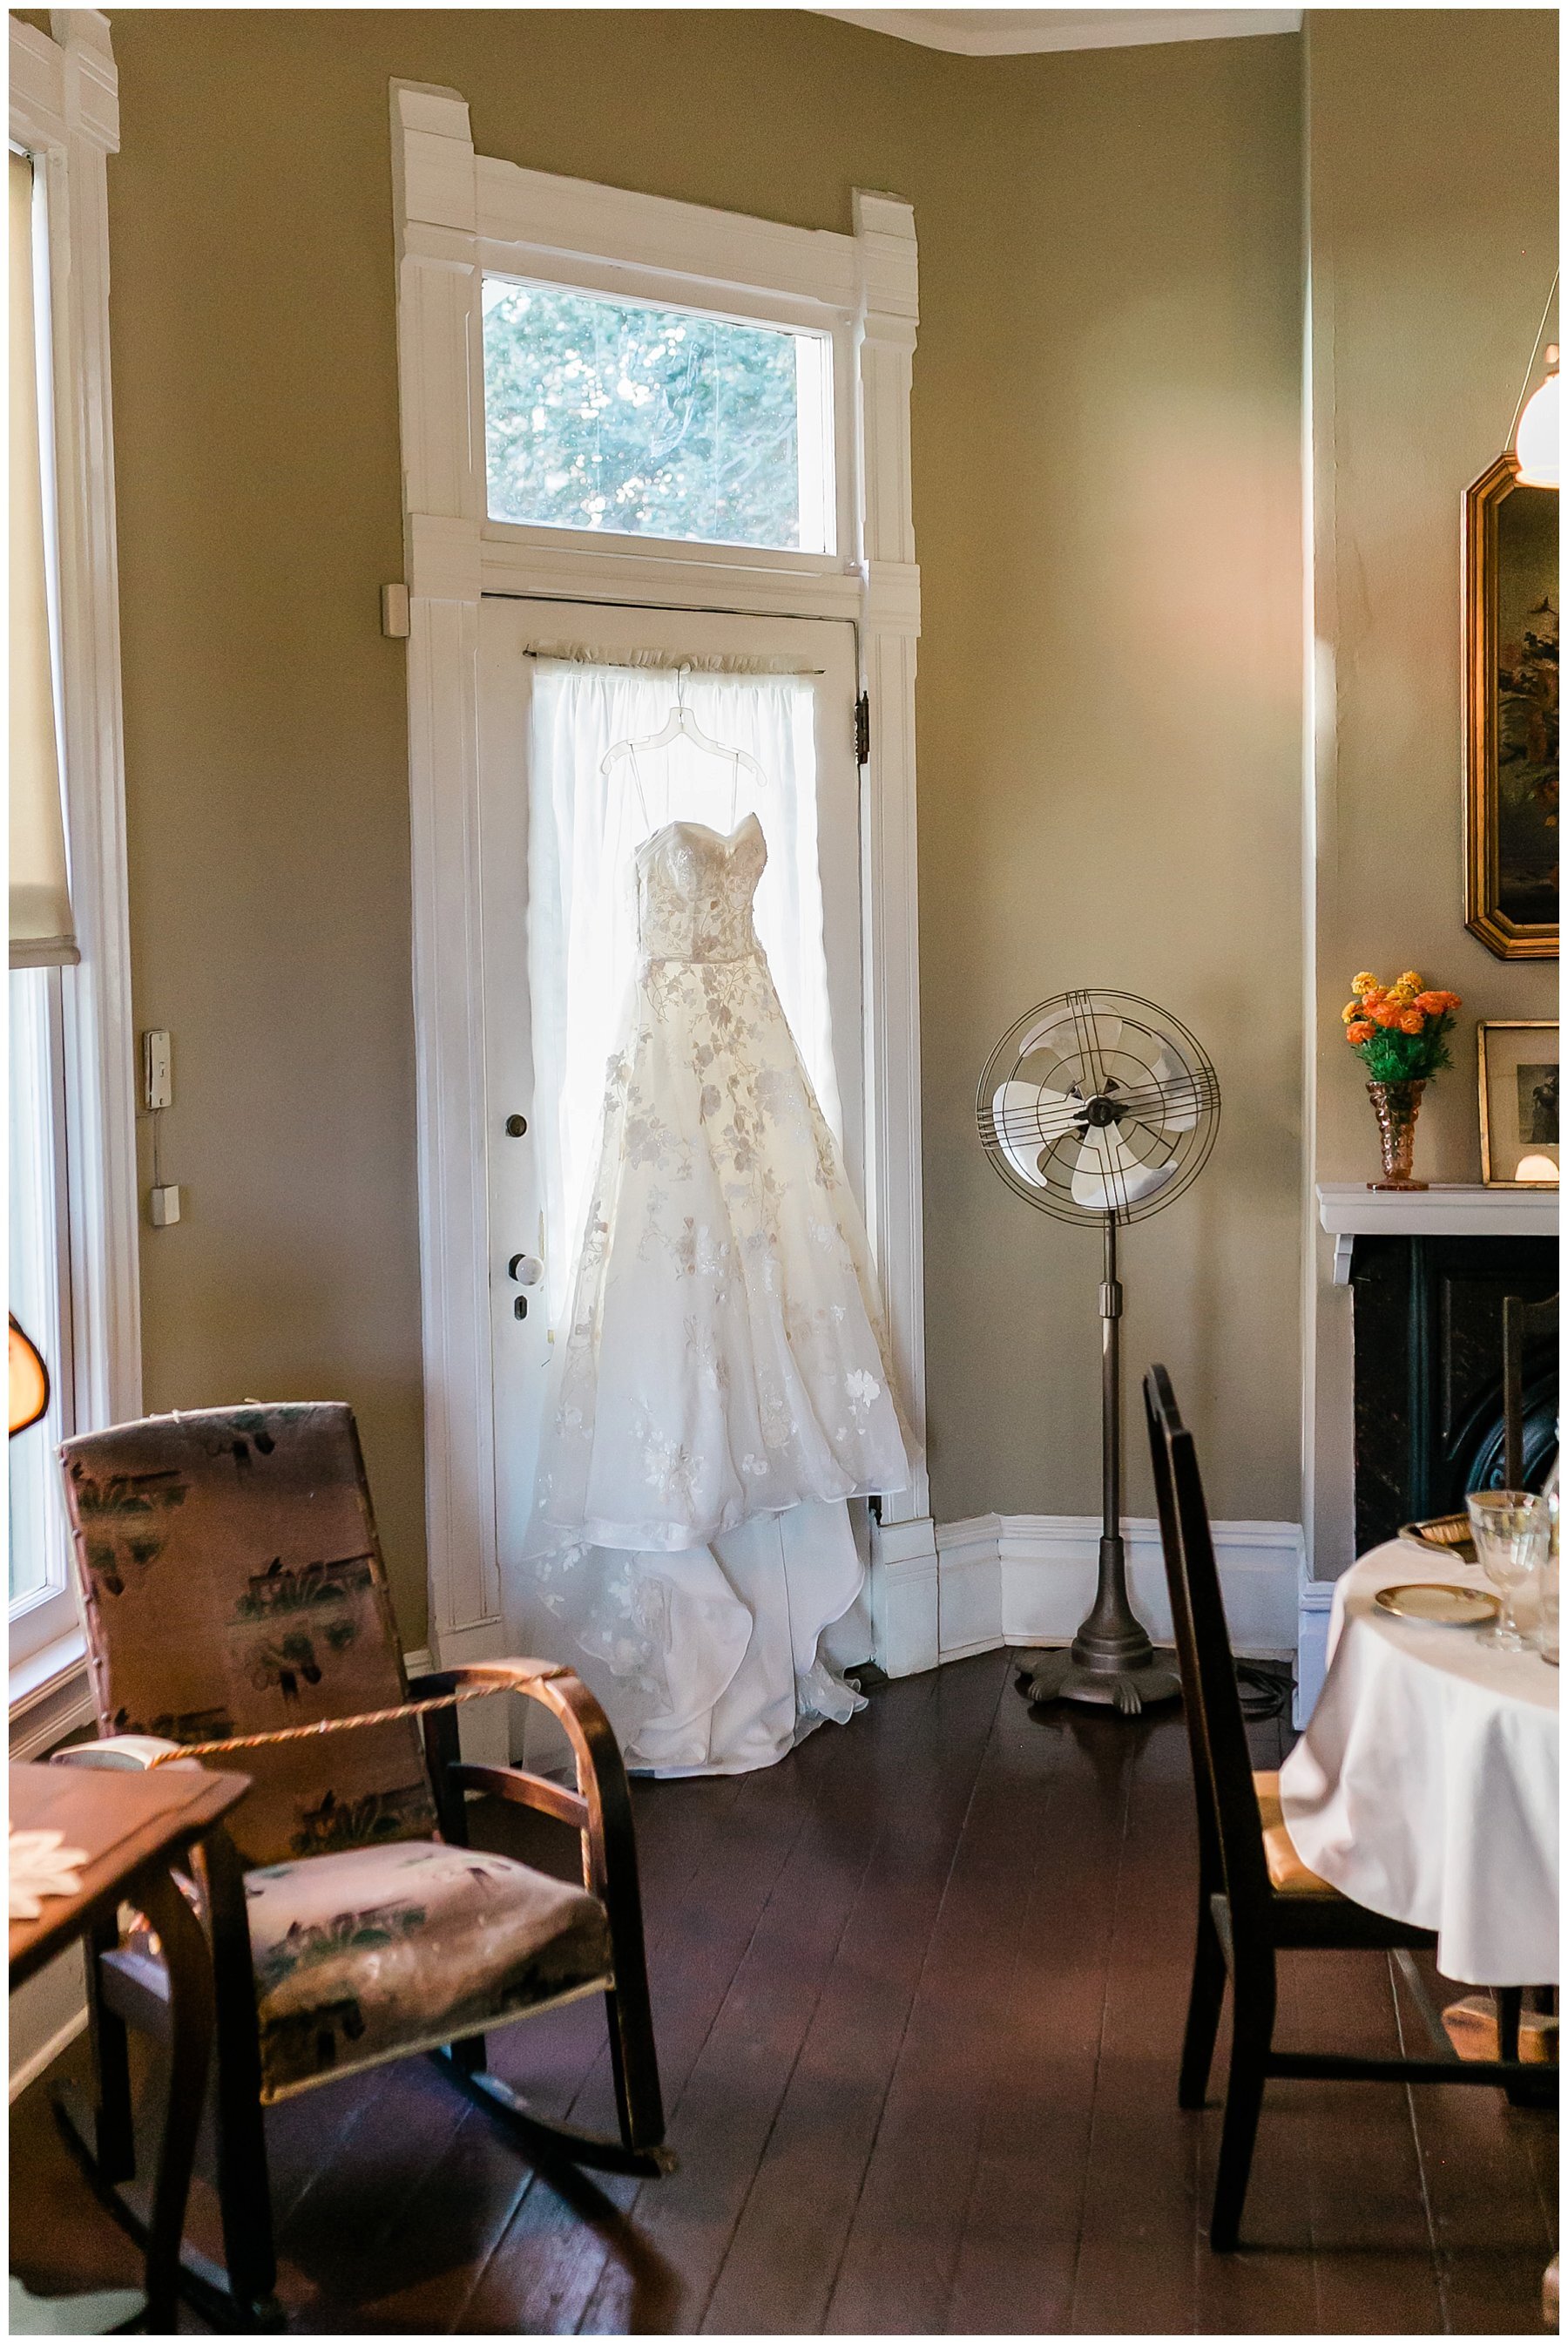  brides gown handing in the doorway 